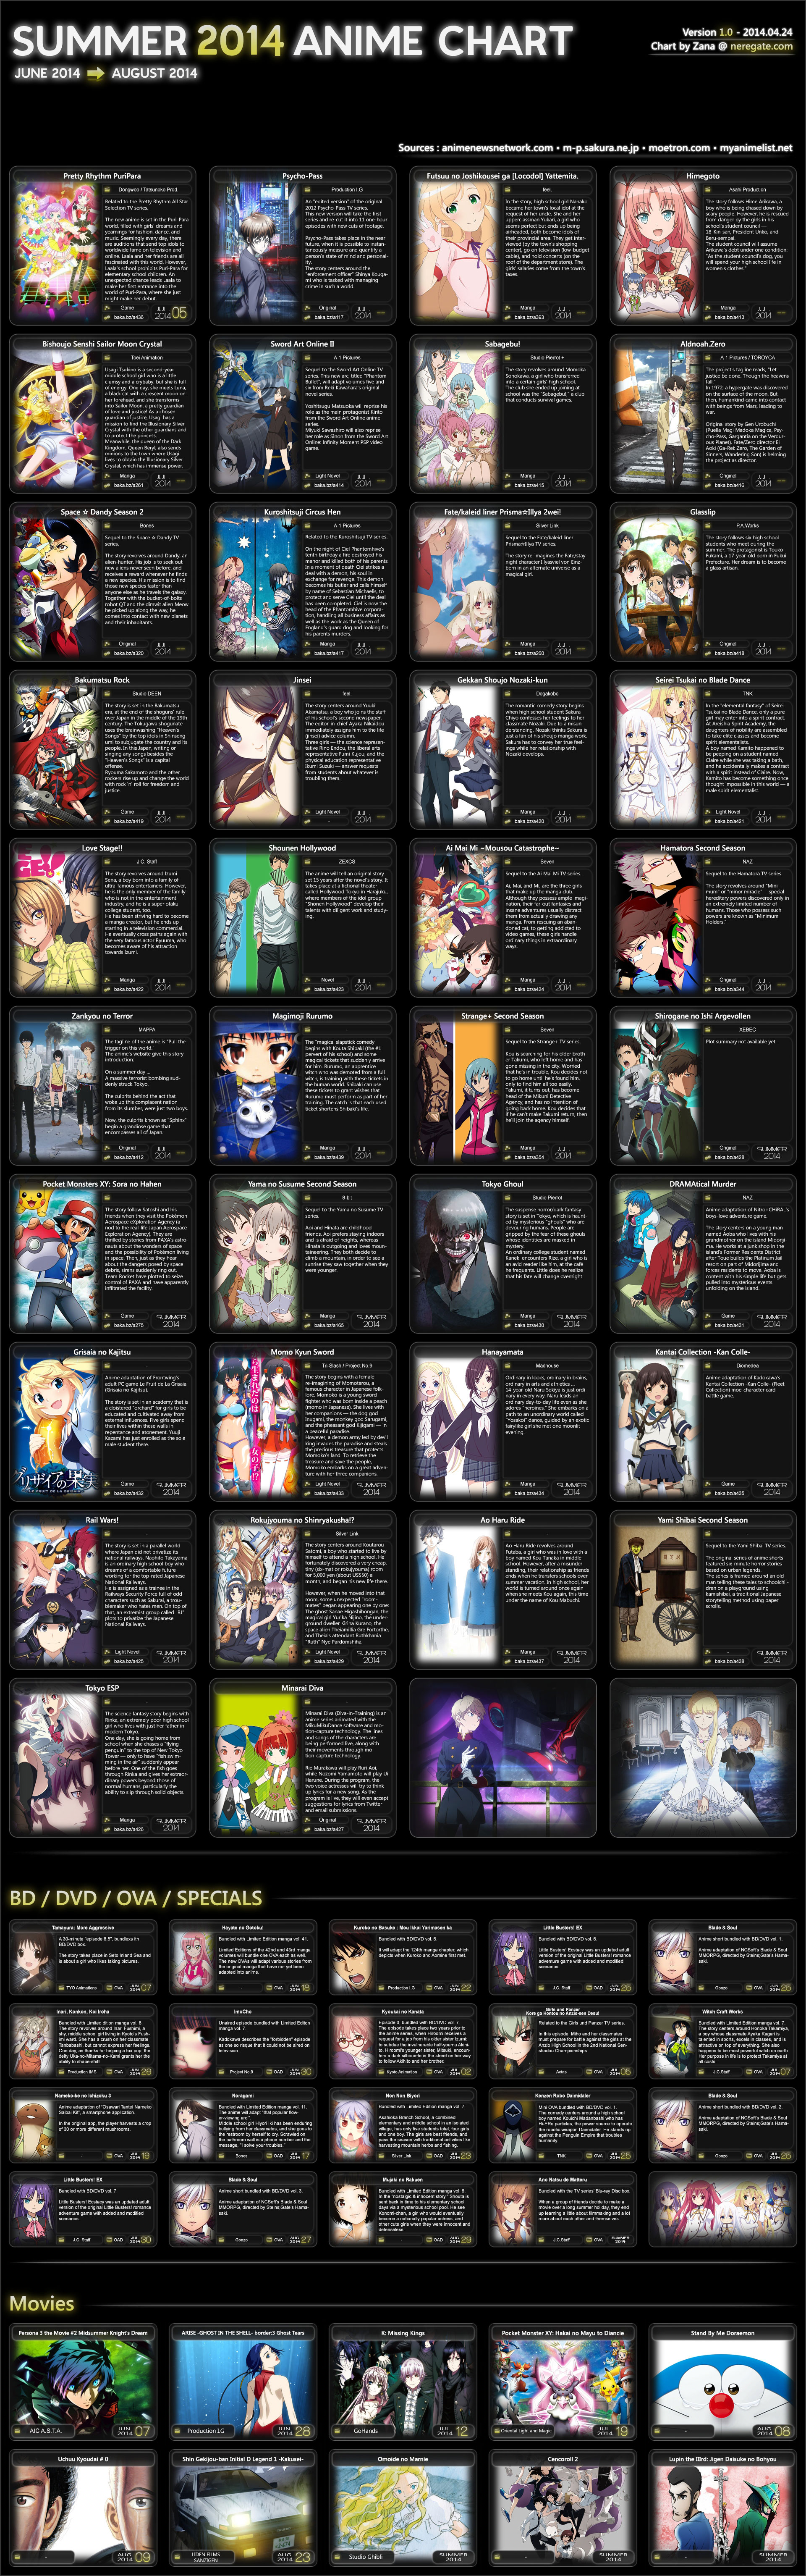 Anime 2014 Summer Schedule